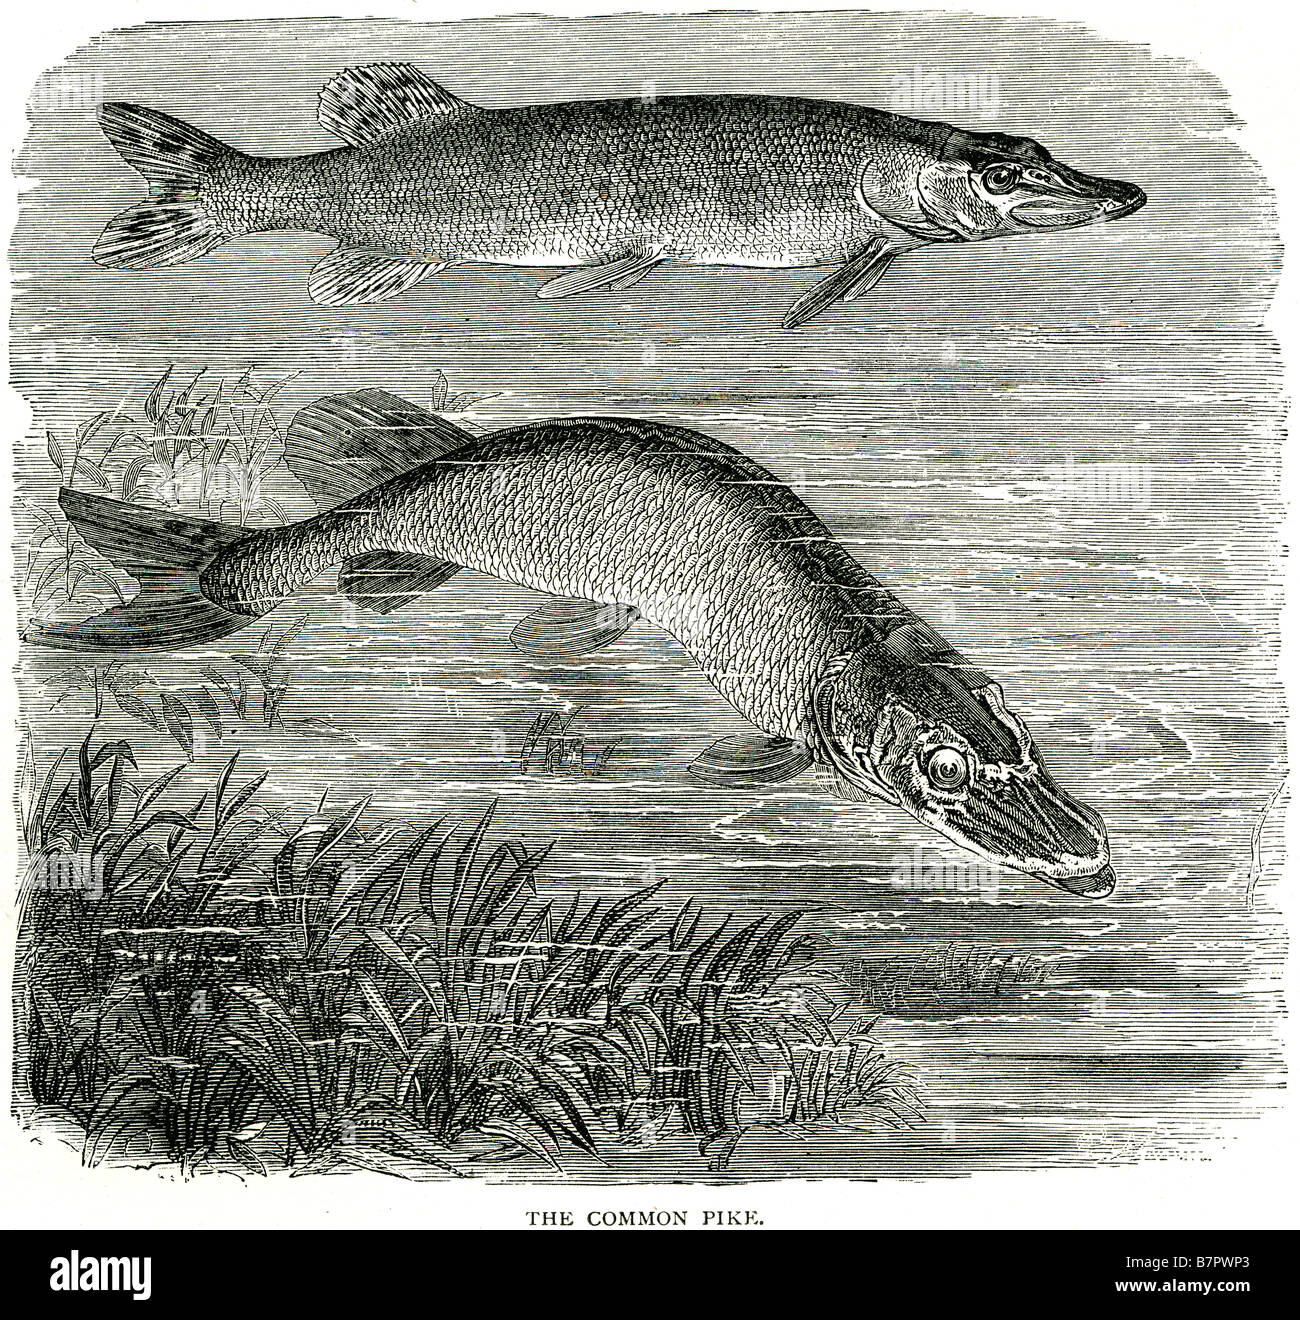 Le brochet du nord (connu comme le brochet en Grande-Bretagne), Esox lucius, est une espèce de poissons carnivores du genre Esox (les Piques). T Banque D'Images